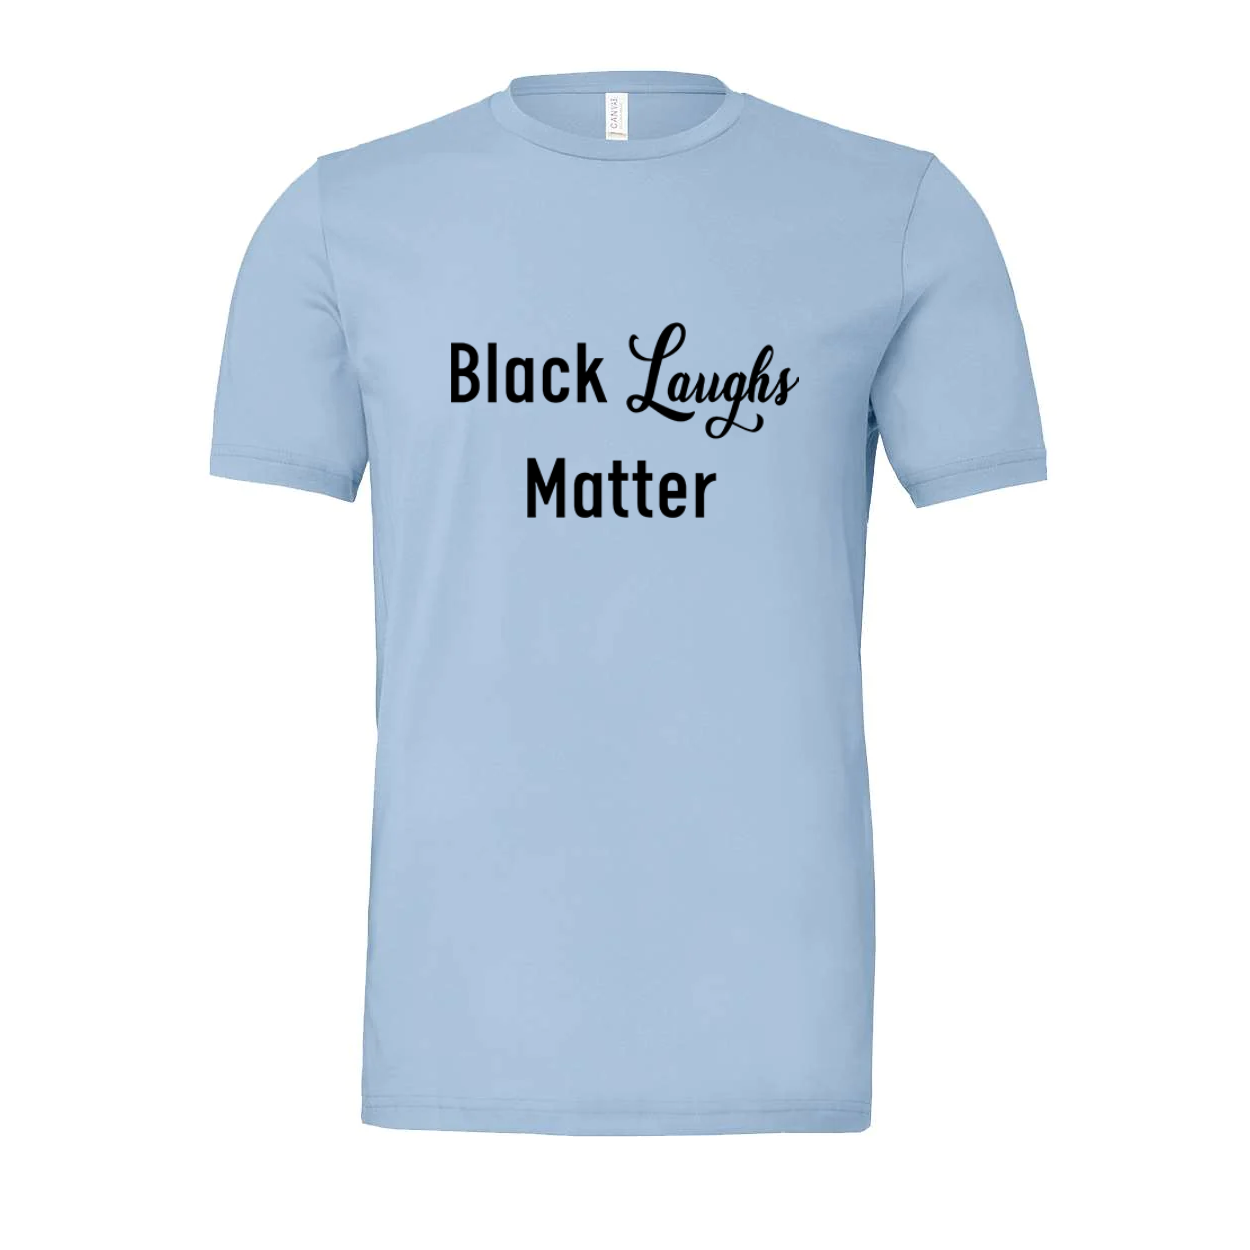 Black Laughs Matter T-Shirt